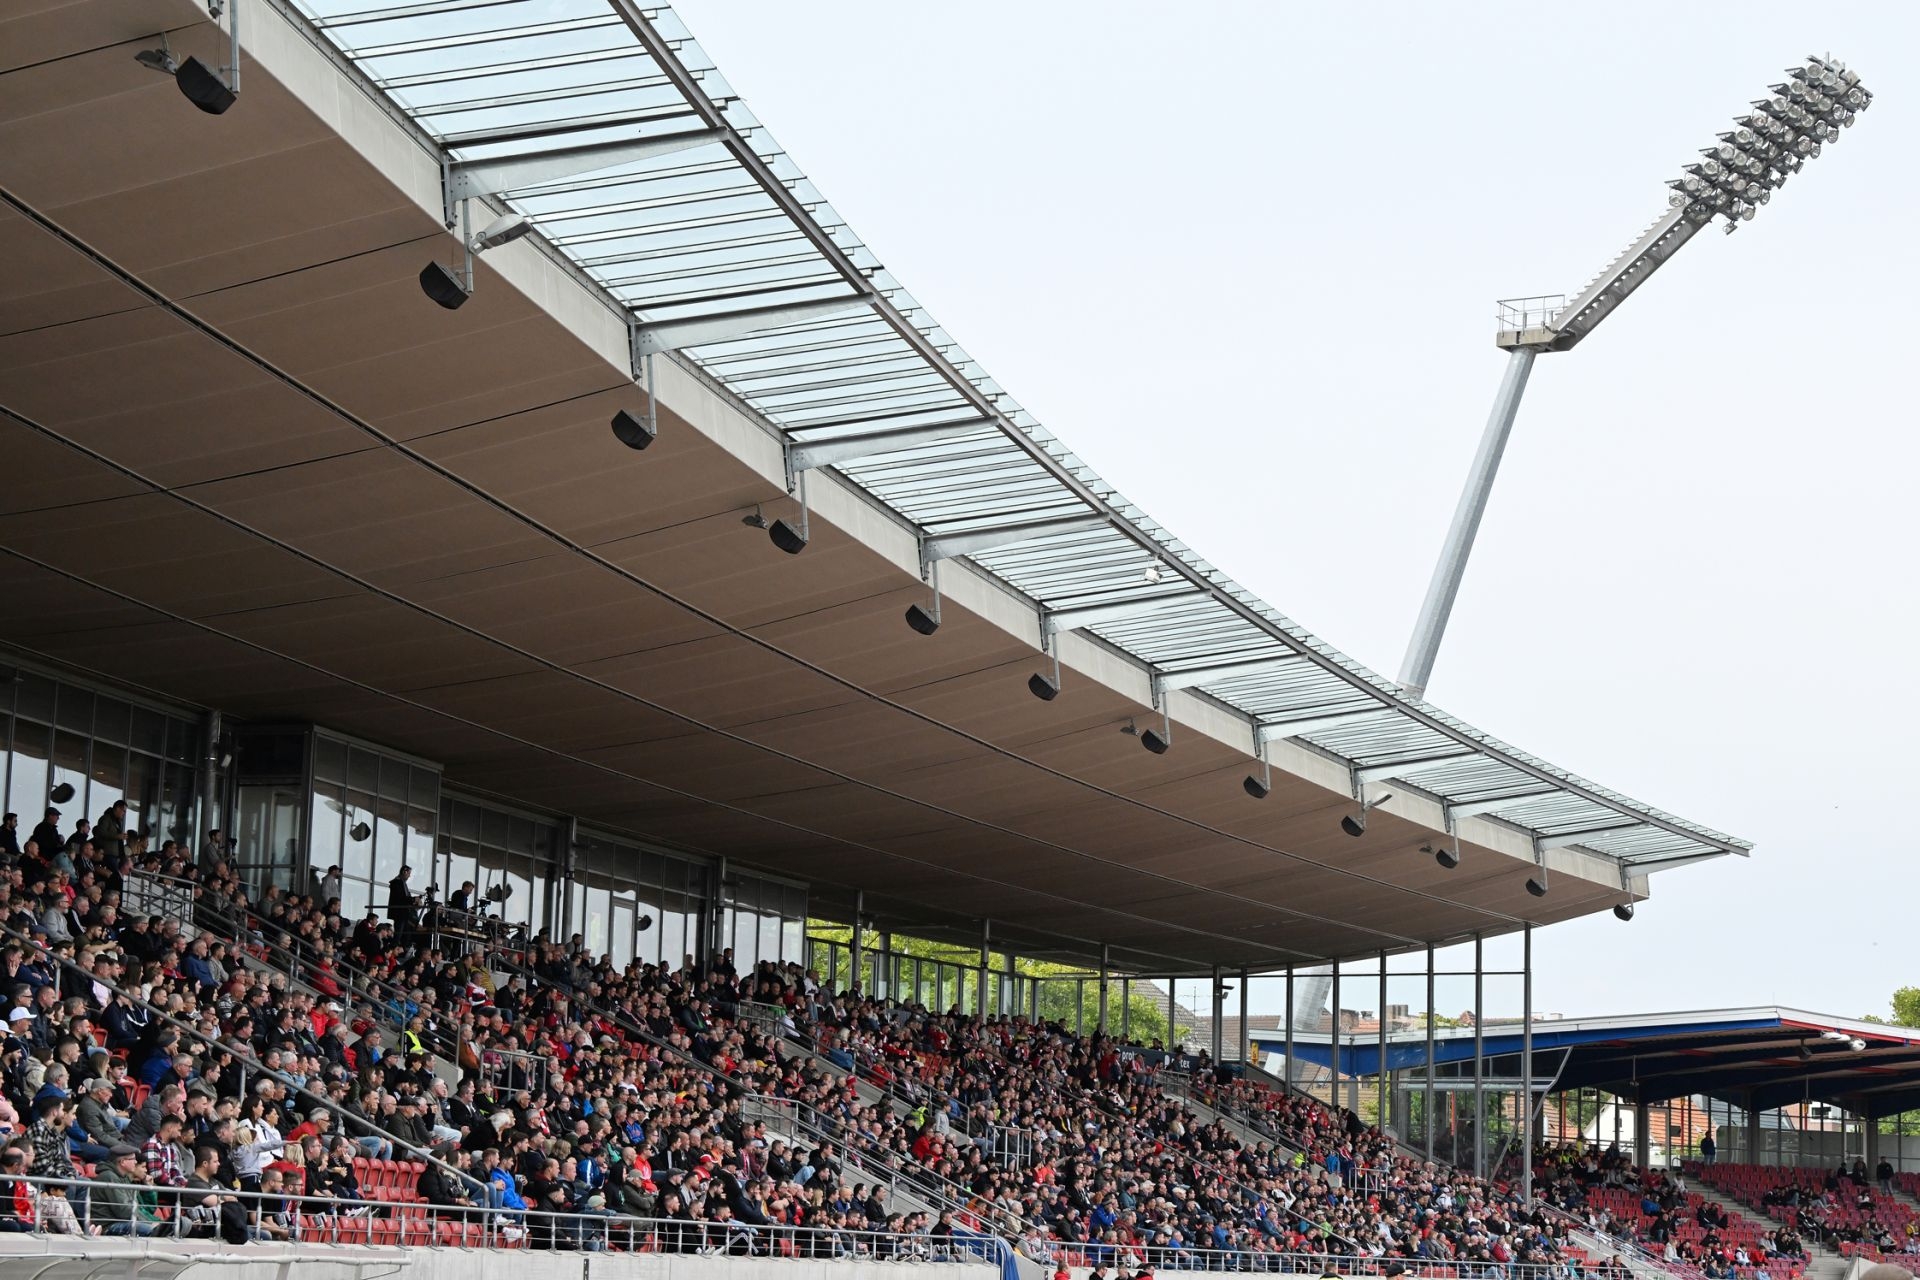 Saison 2022/23, Spieltag 2, KSV Hessen Kassel, Kickers Offenbach, Endstand 0:1: Auestadion, Haupttribüne, Flutlicht, Zuschauer, Fans